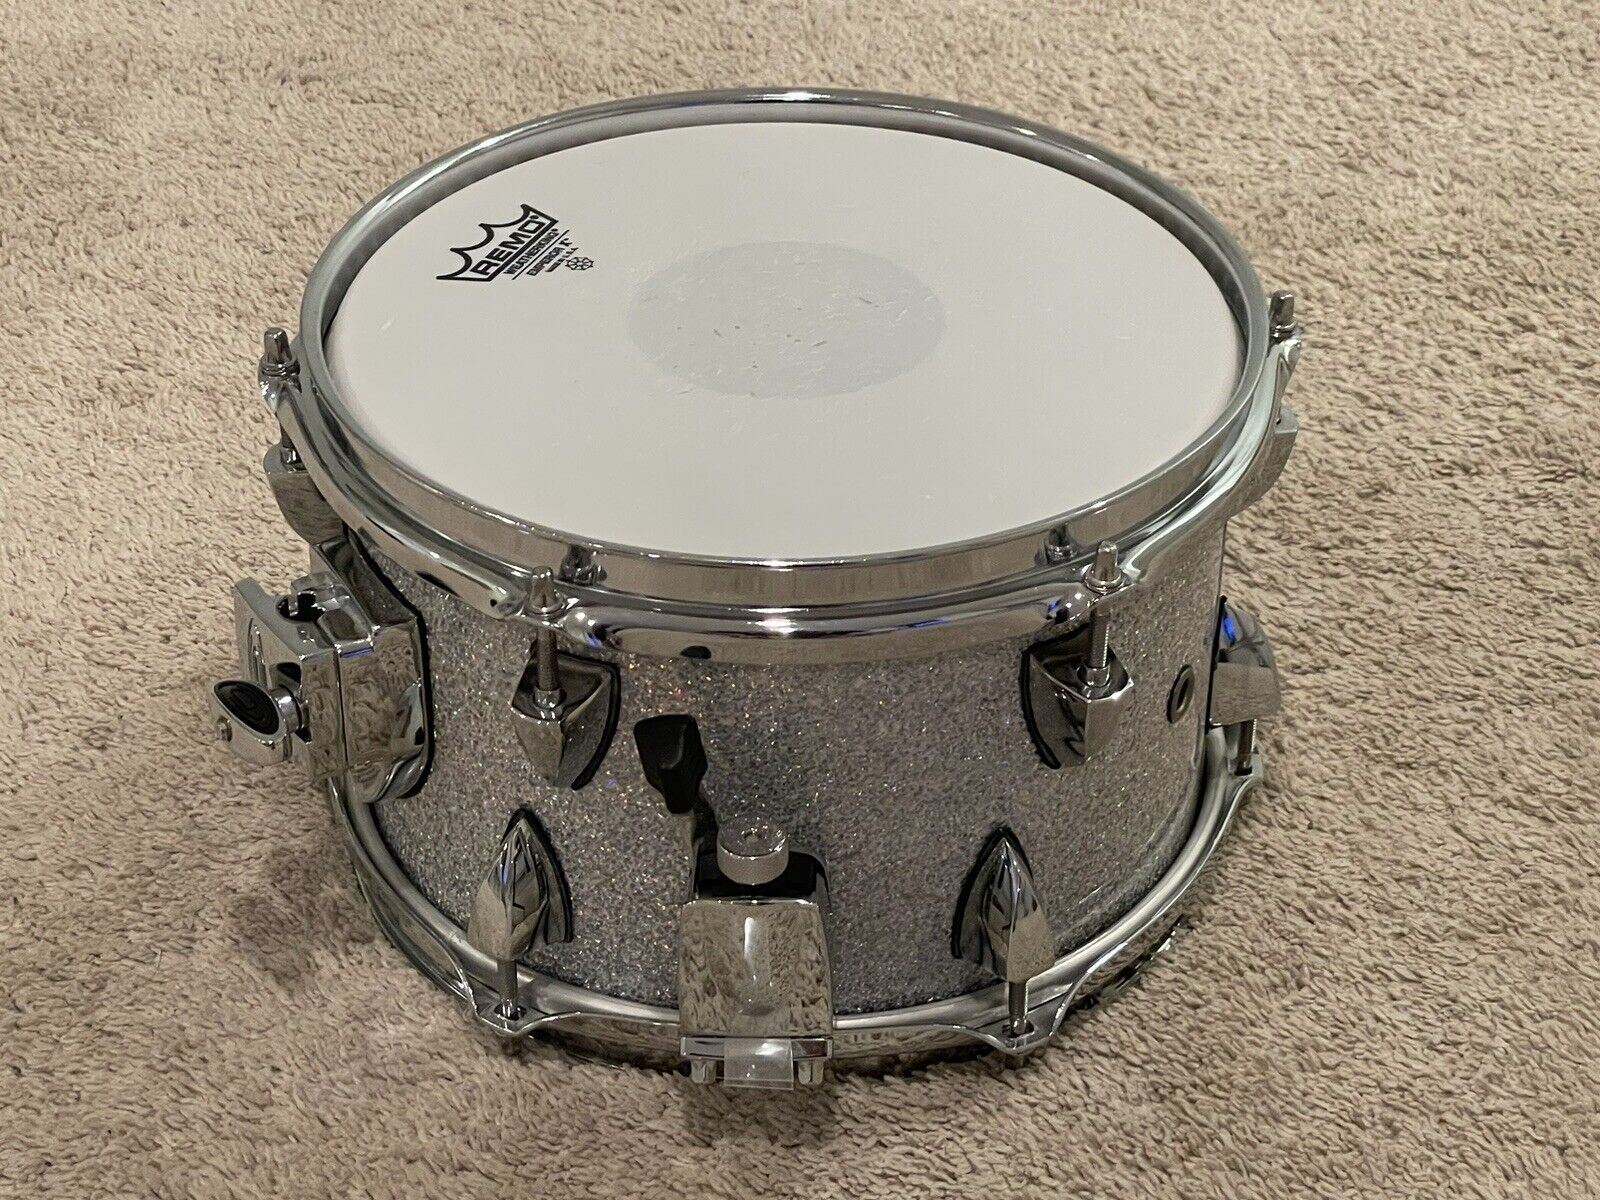 OCDP 10 X 6.5” Snare Drum Travis Barker Signature Model Drums Drumset Side 5